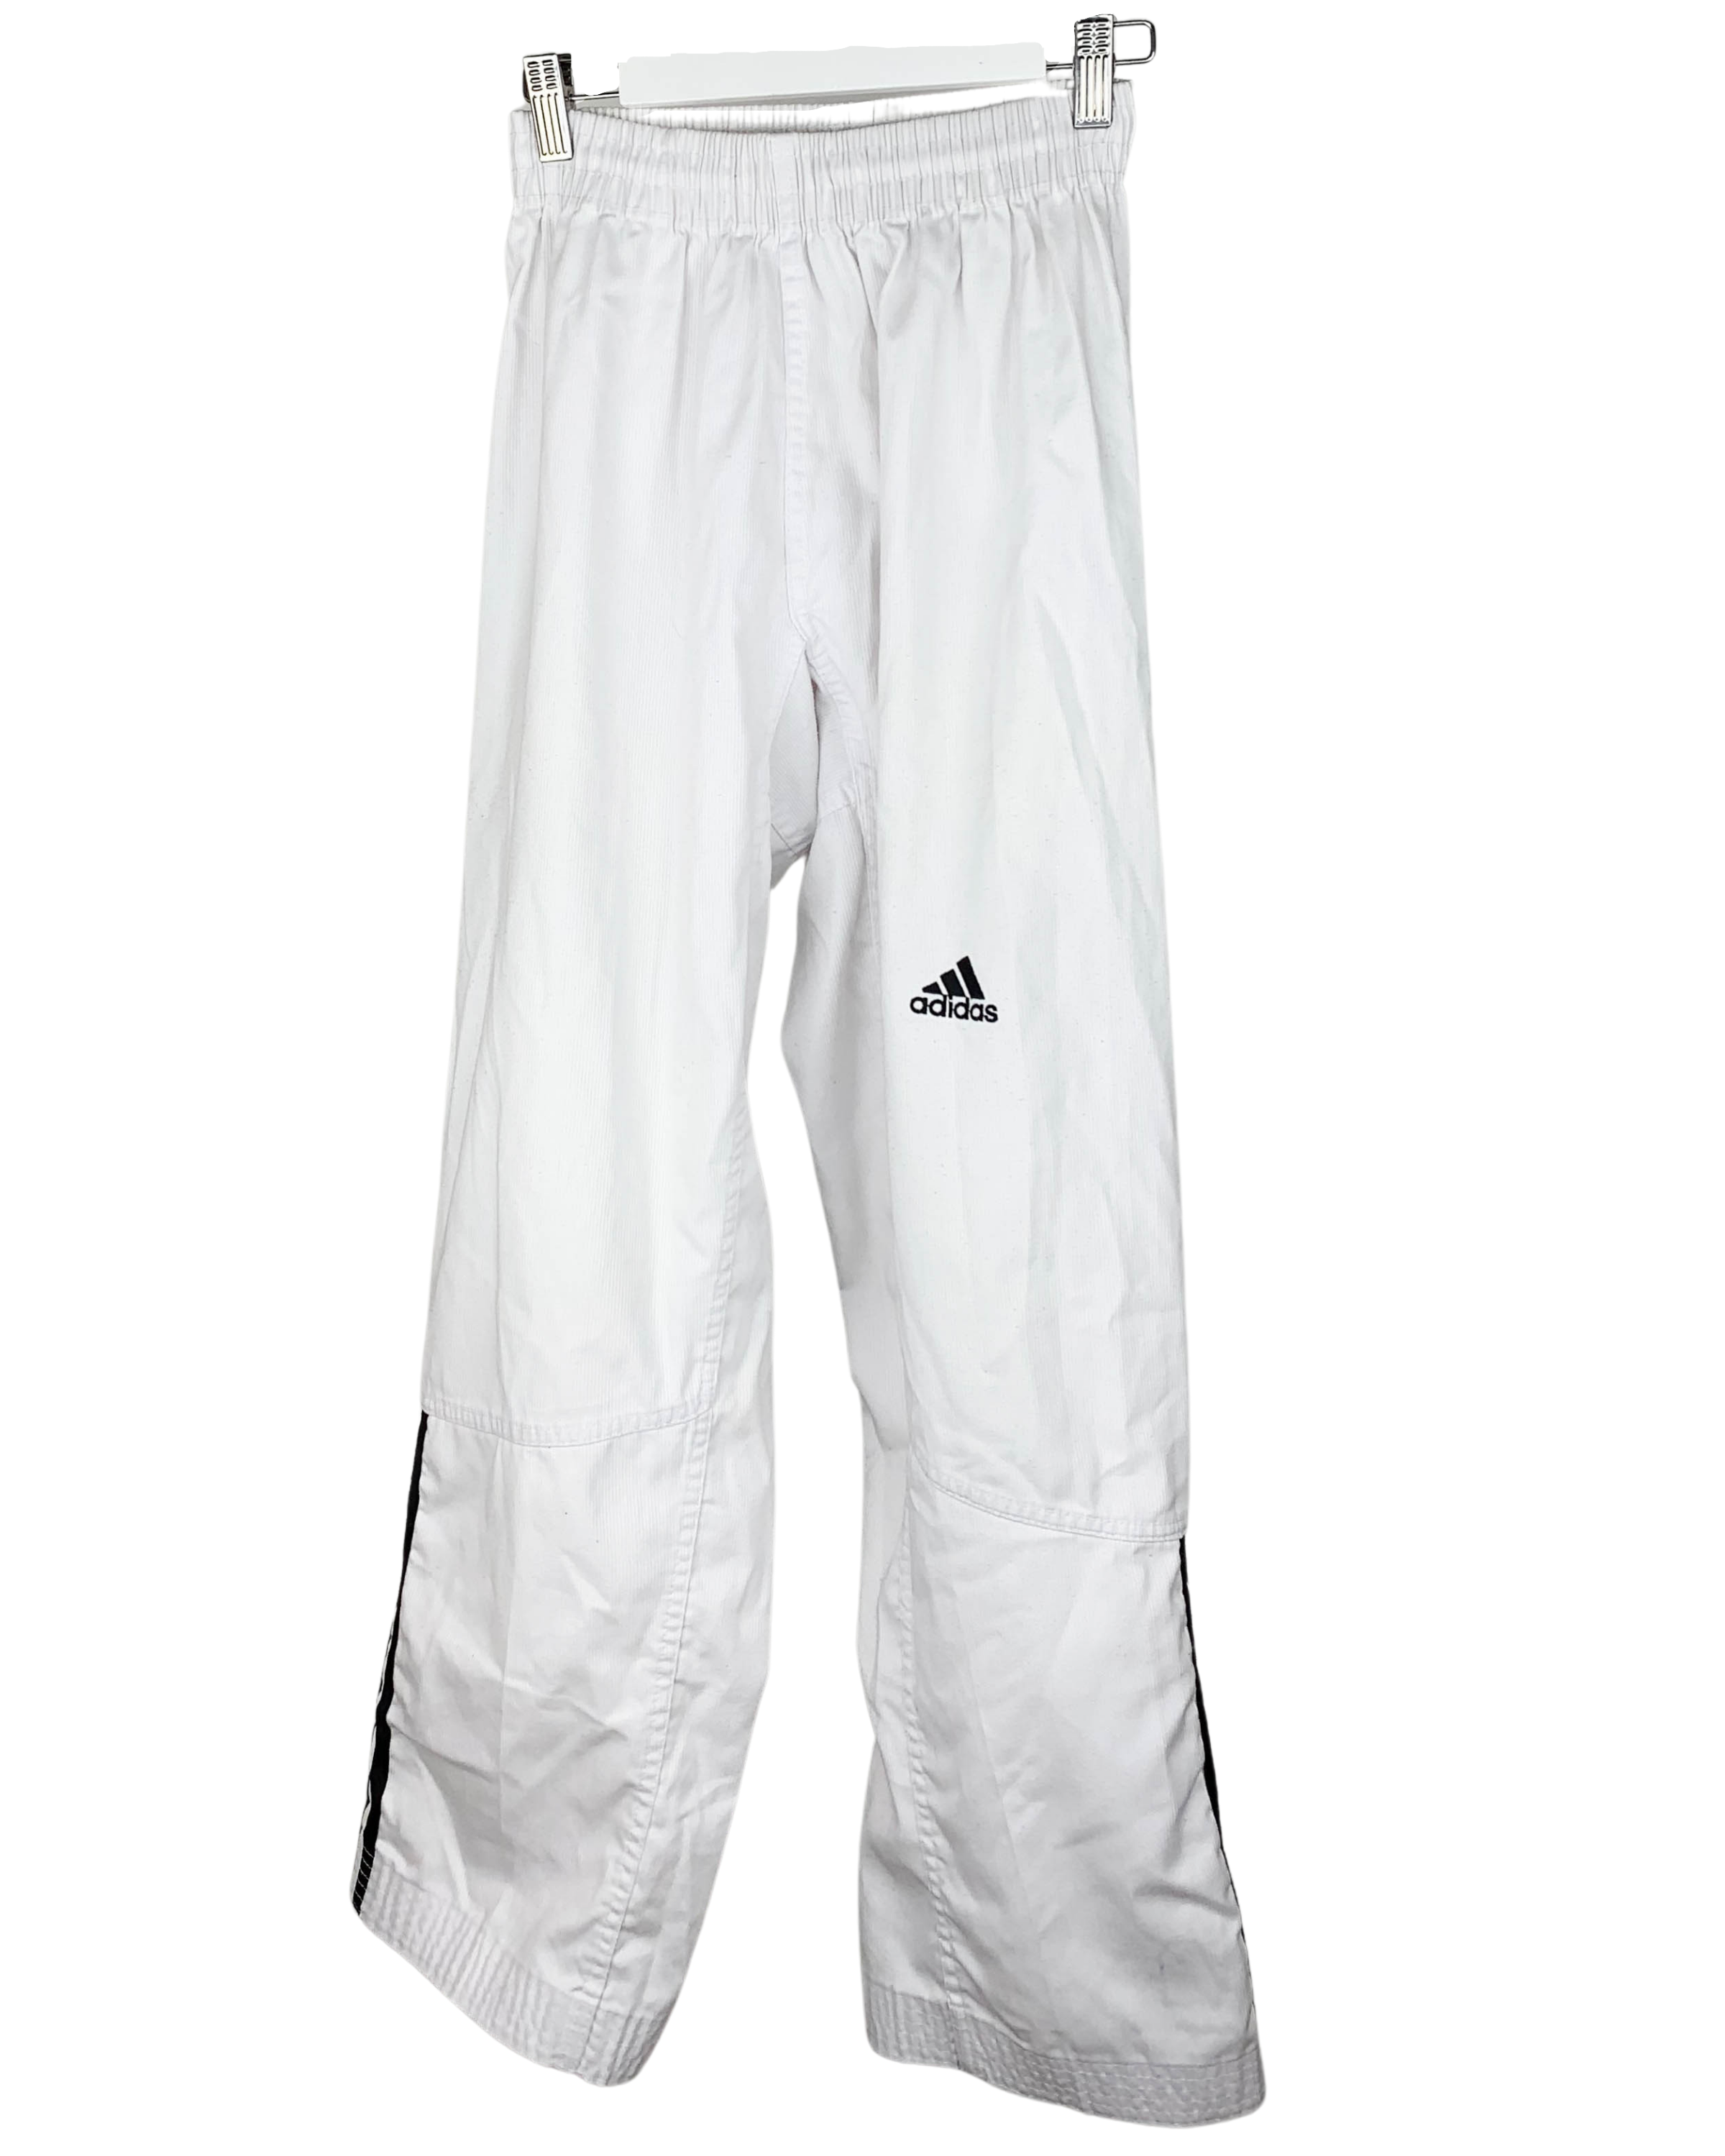 White adidas Taekwondo Pants